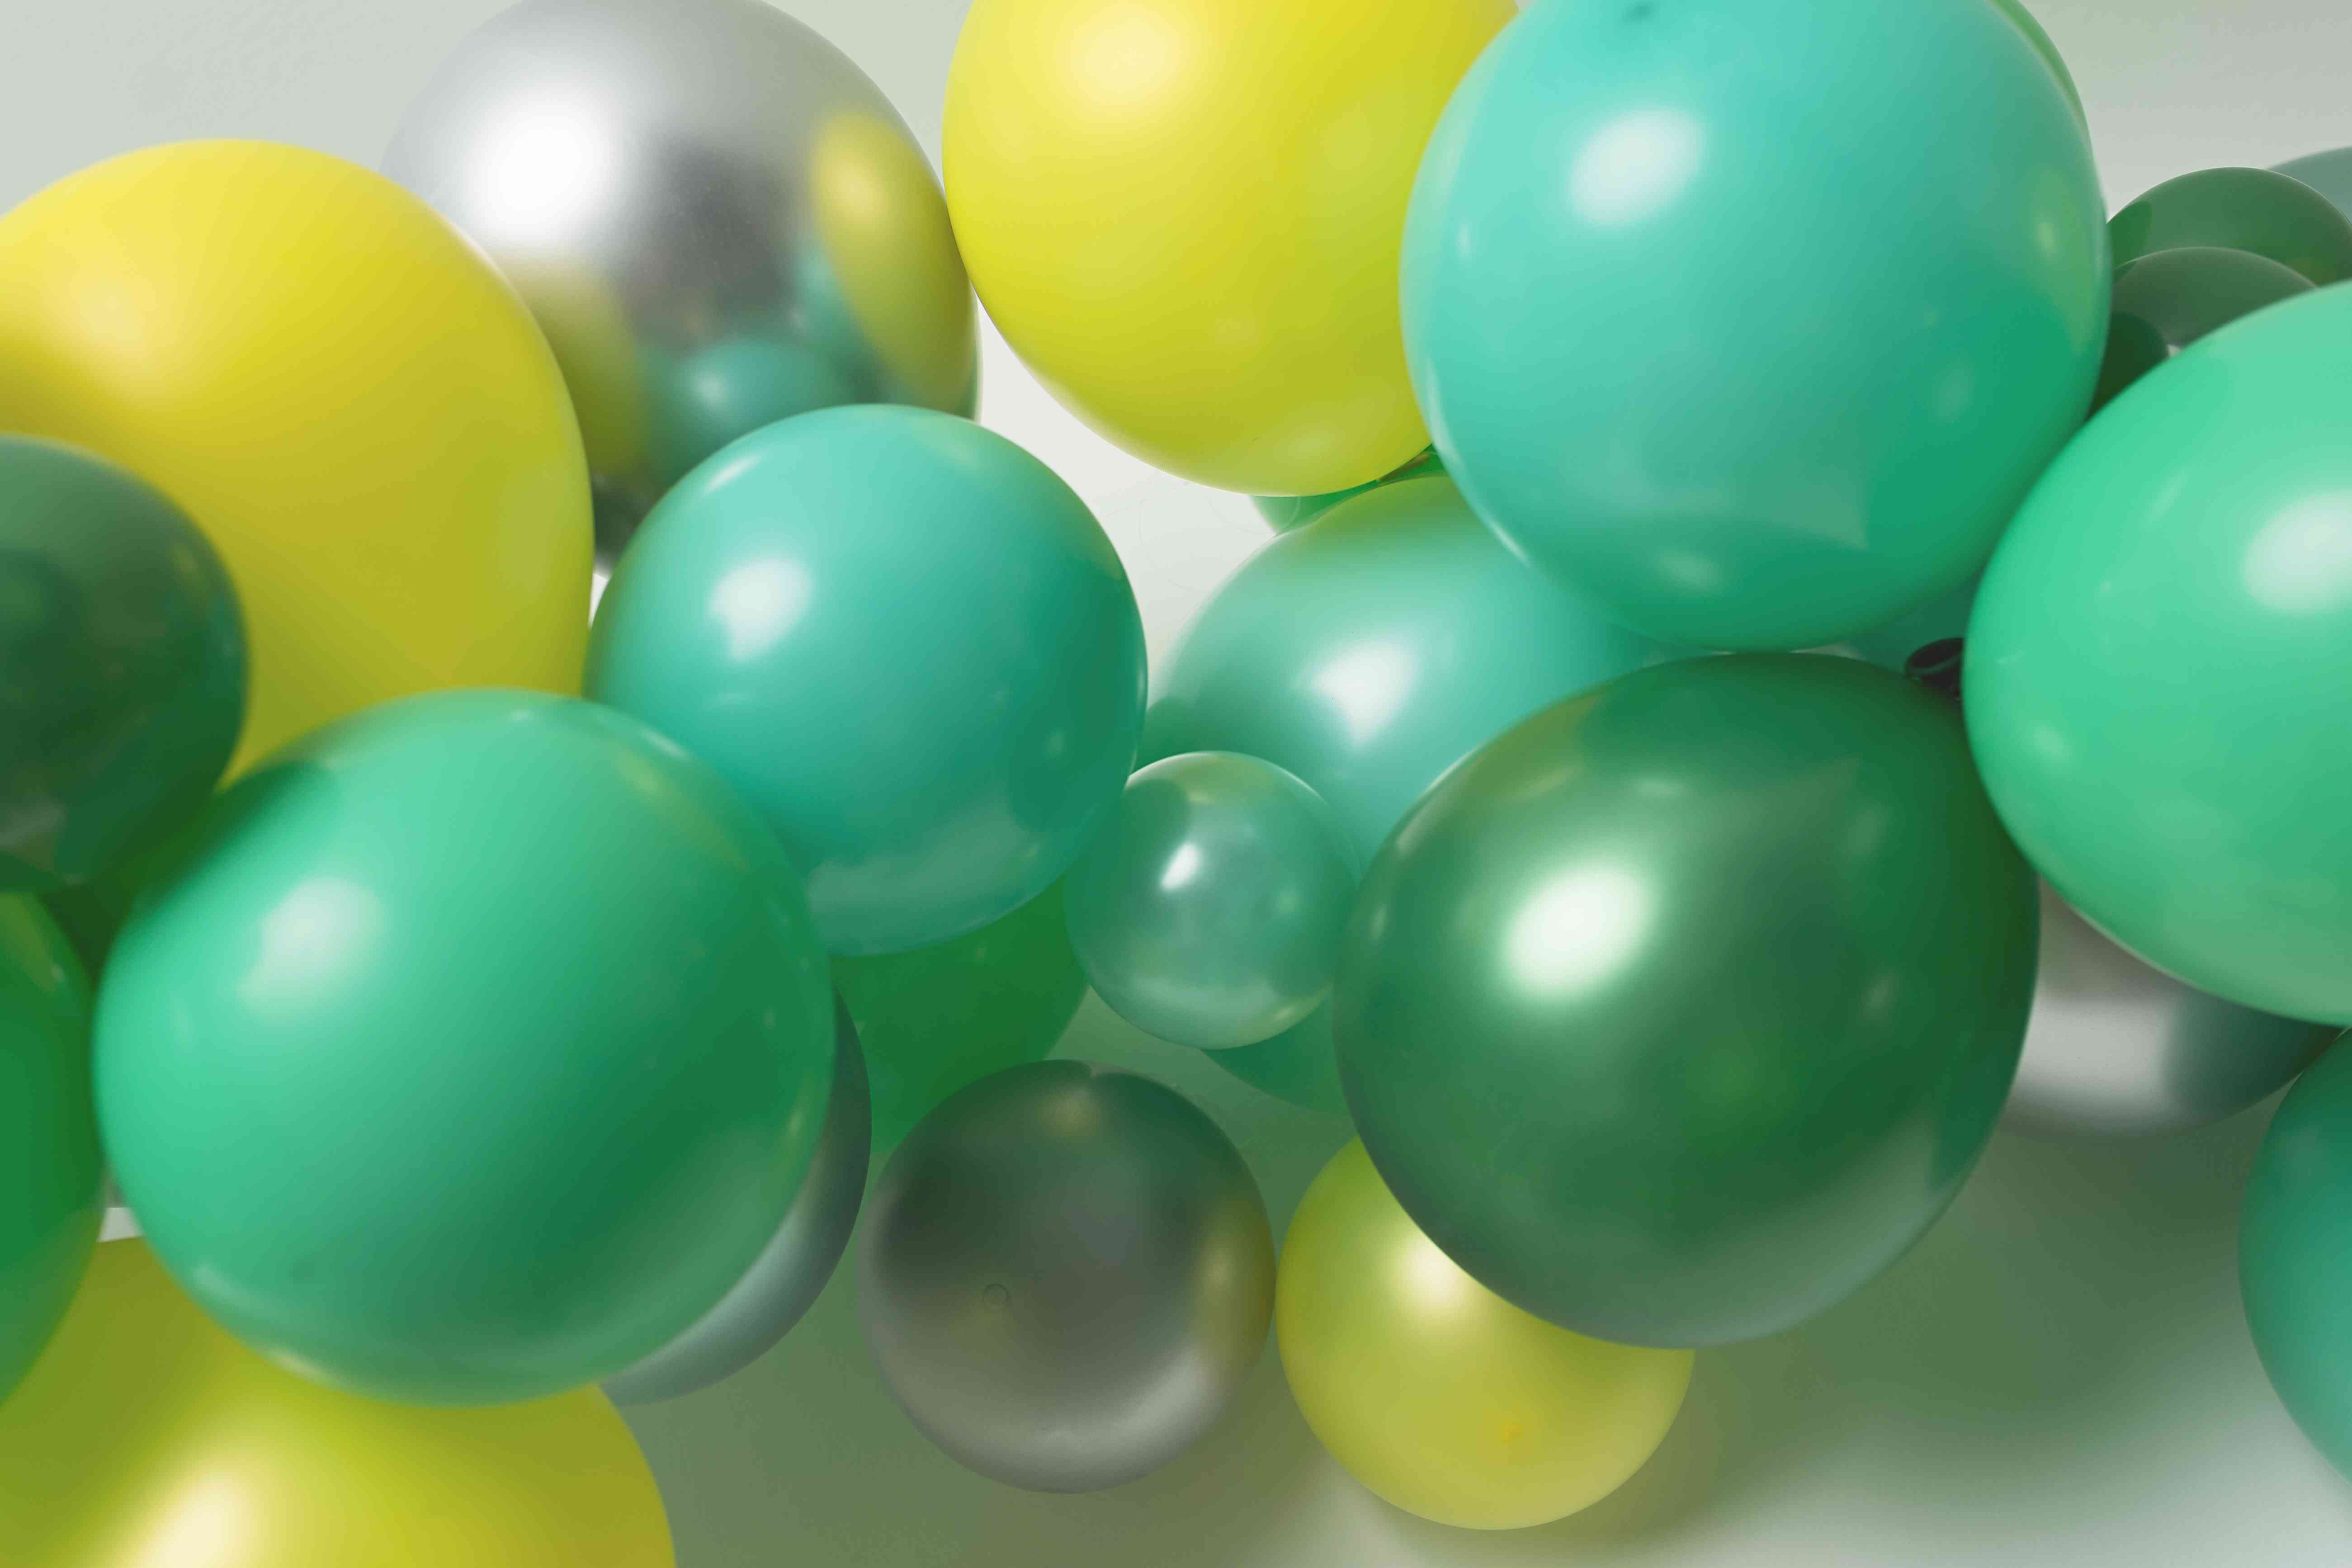 Ballons Anniversaire En Grappe - Décoration Fêtes 